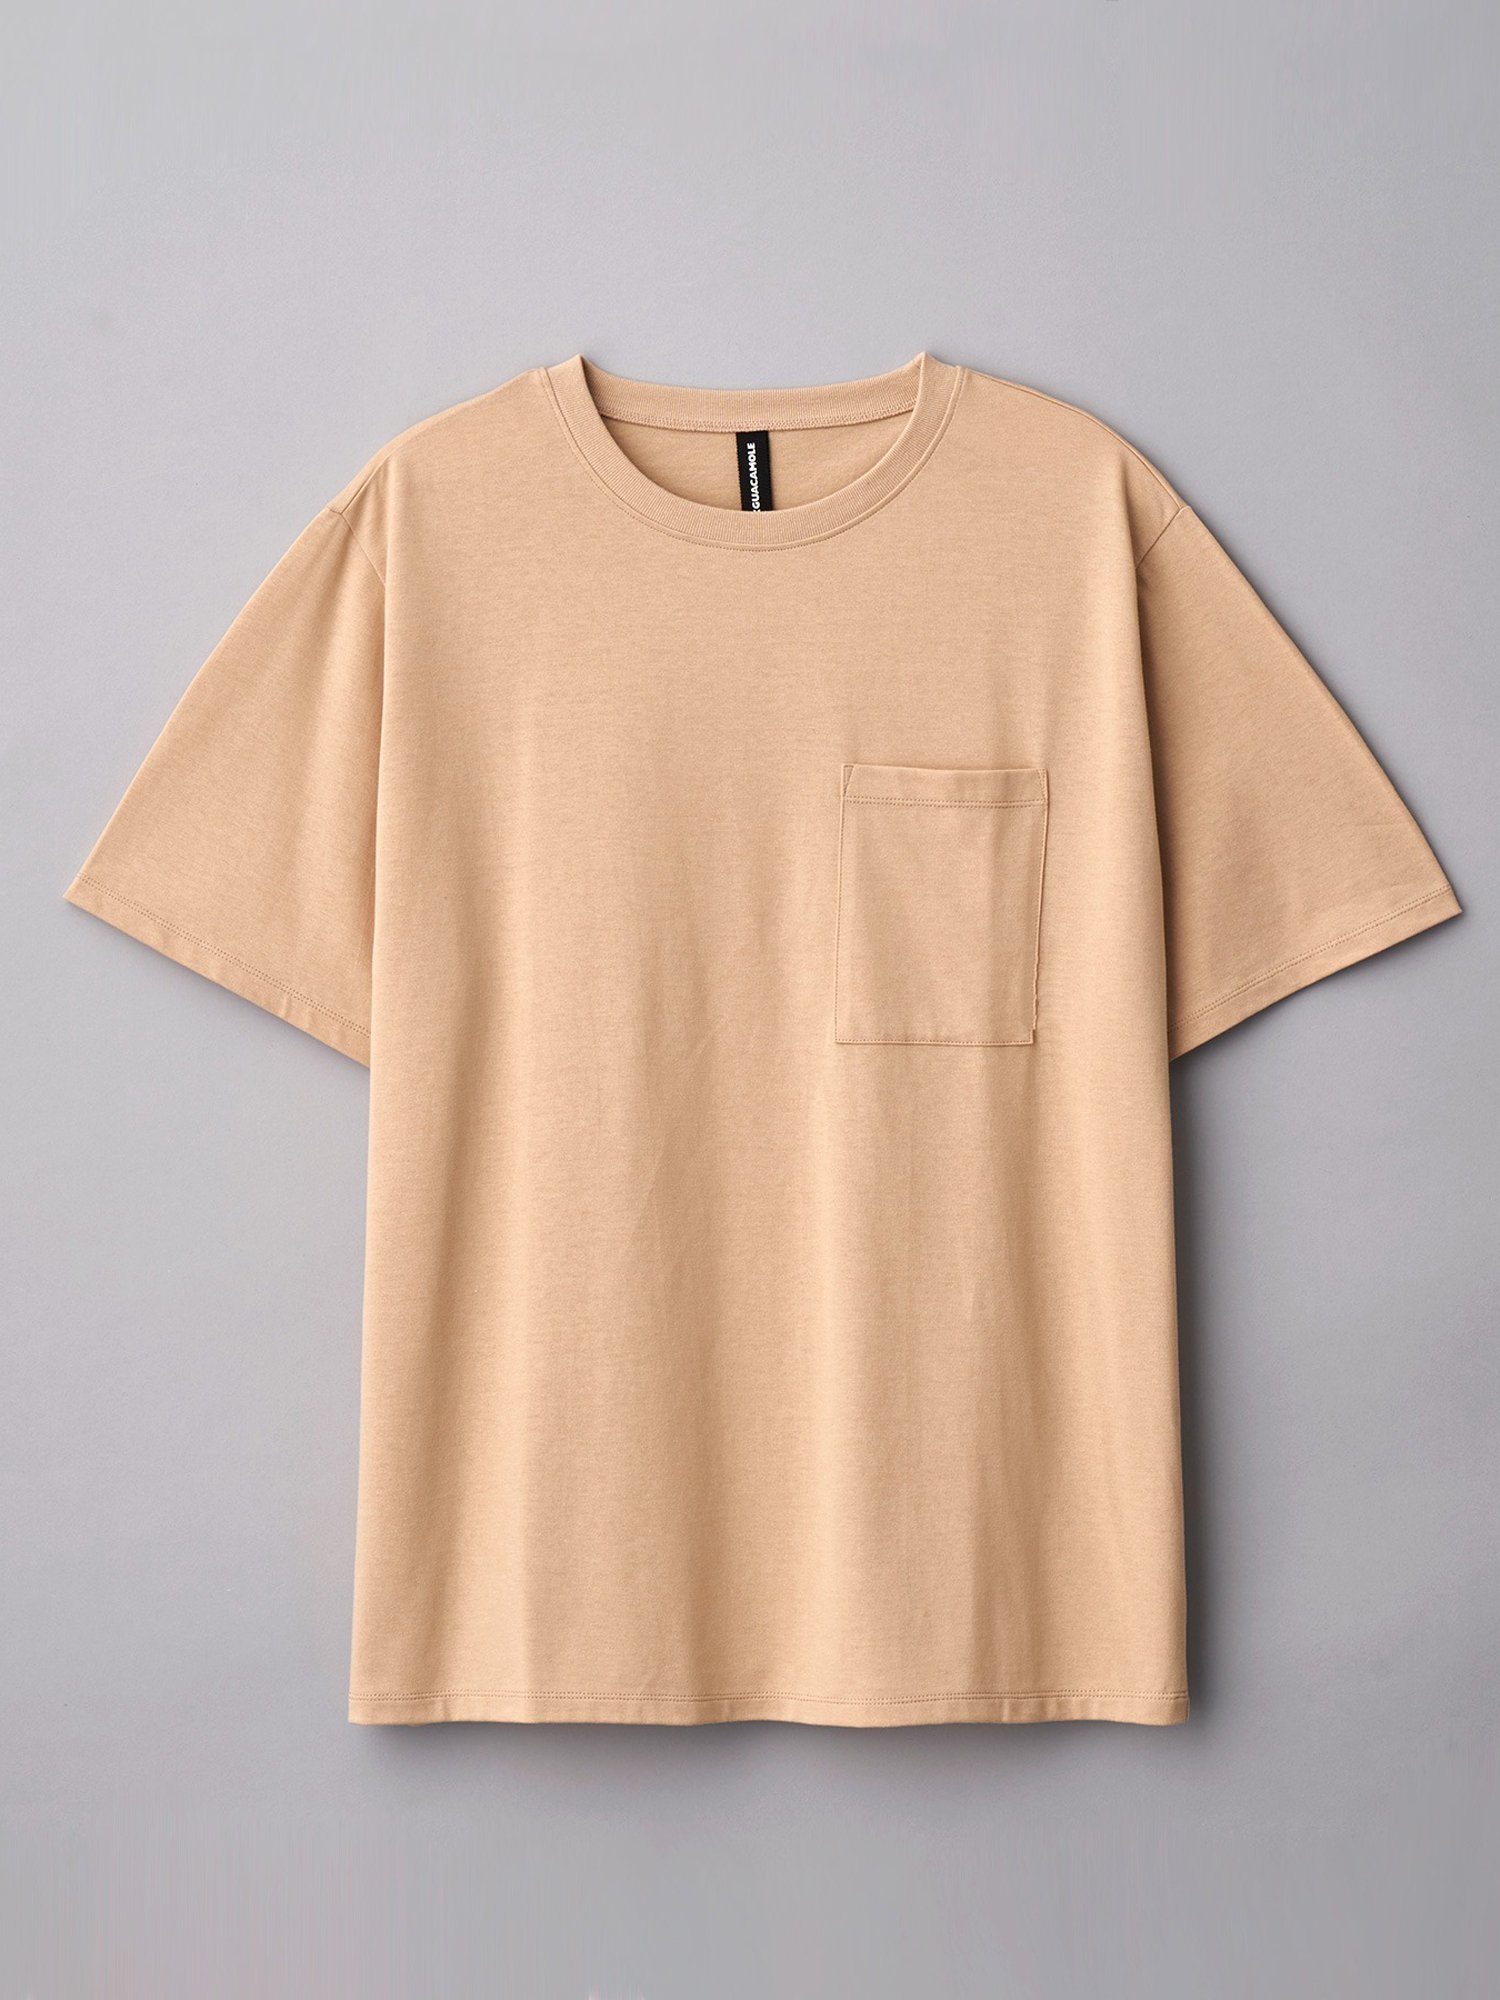 【SALE／60%OFF】GUACAMOLE GUACAMOLE/(U)Function pocket t shirt/half (ポケットシャツ)* ピーアールワン トップス カットソー・Tシャツ ベージュ ブラック グレー ホワイト